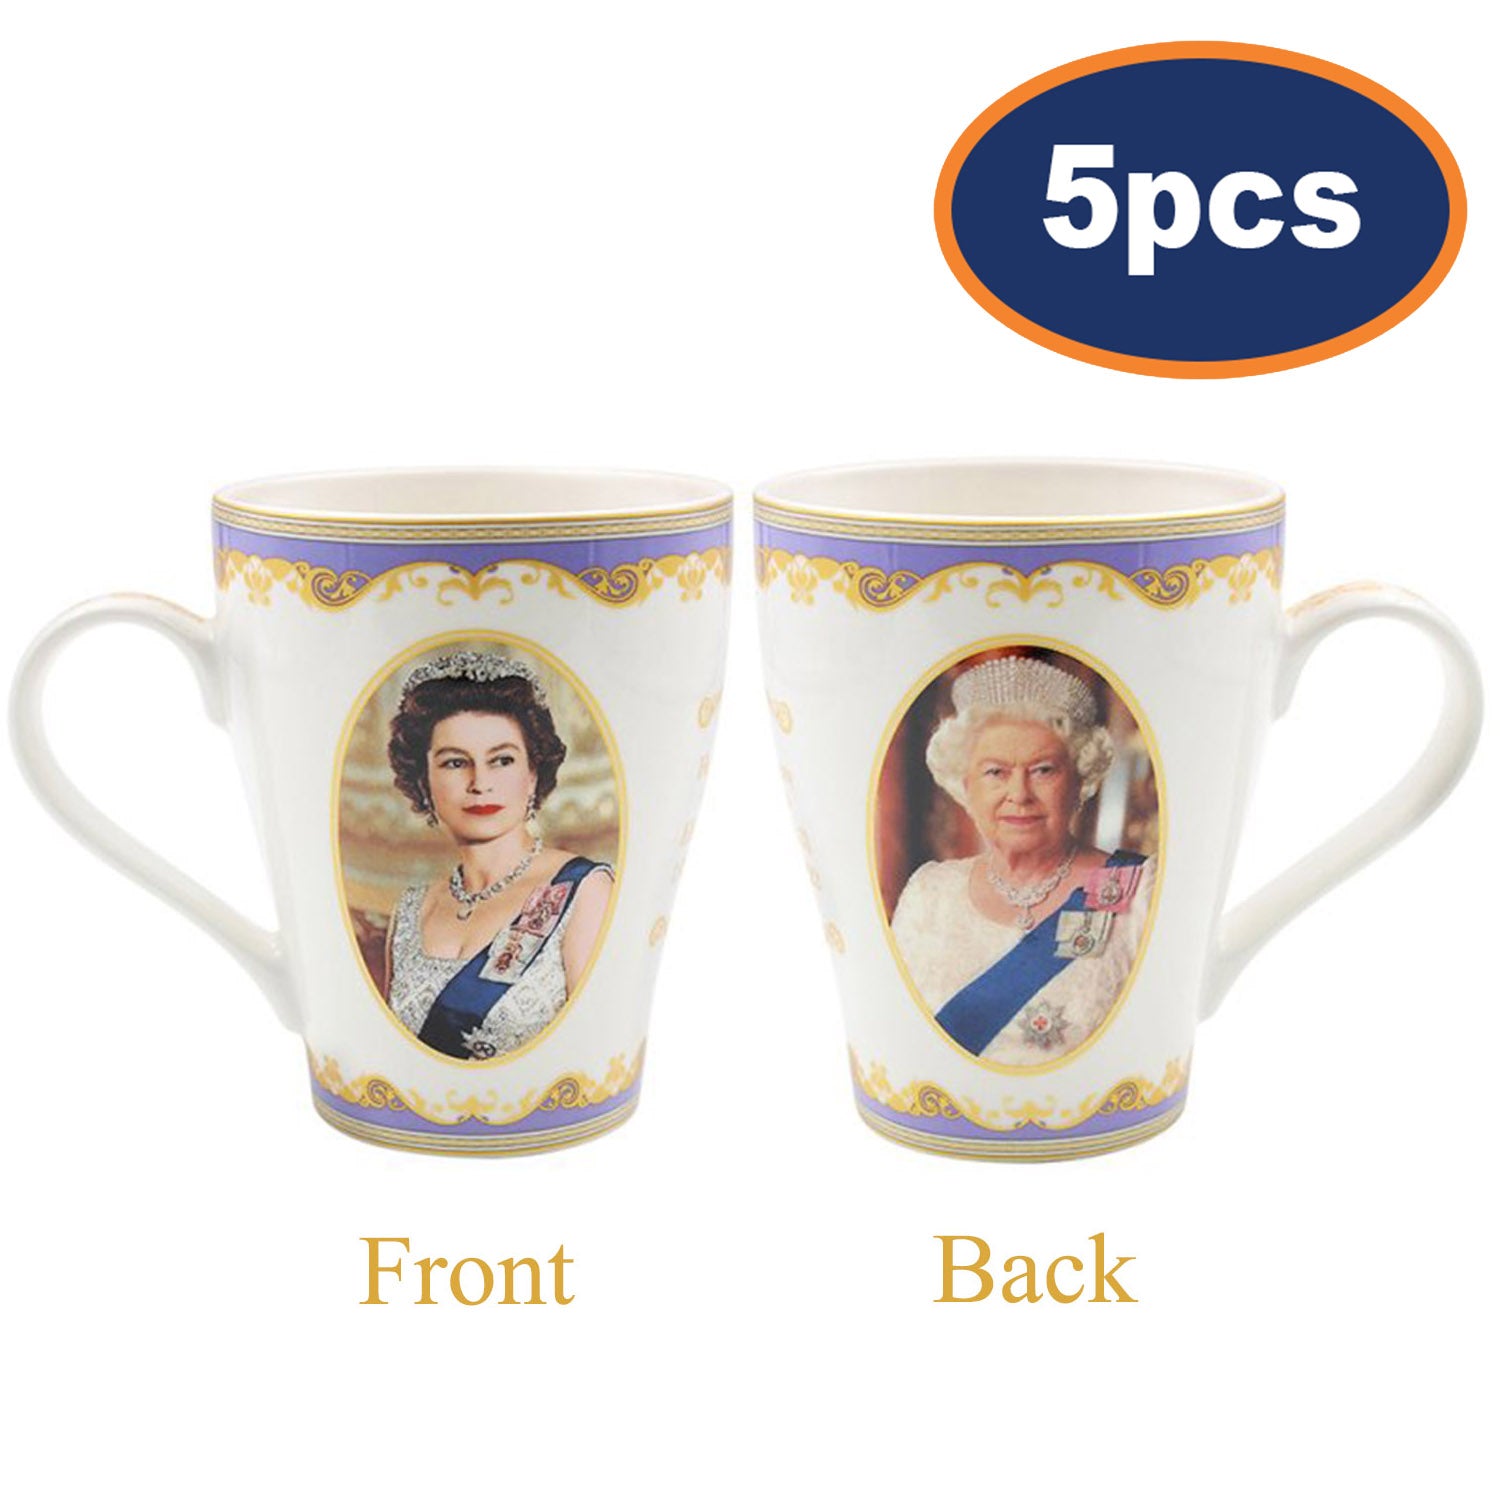 5pcs Queen Elizabeth II Fine China Mugs 350ml